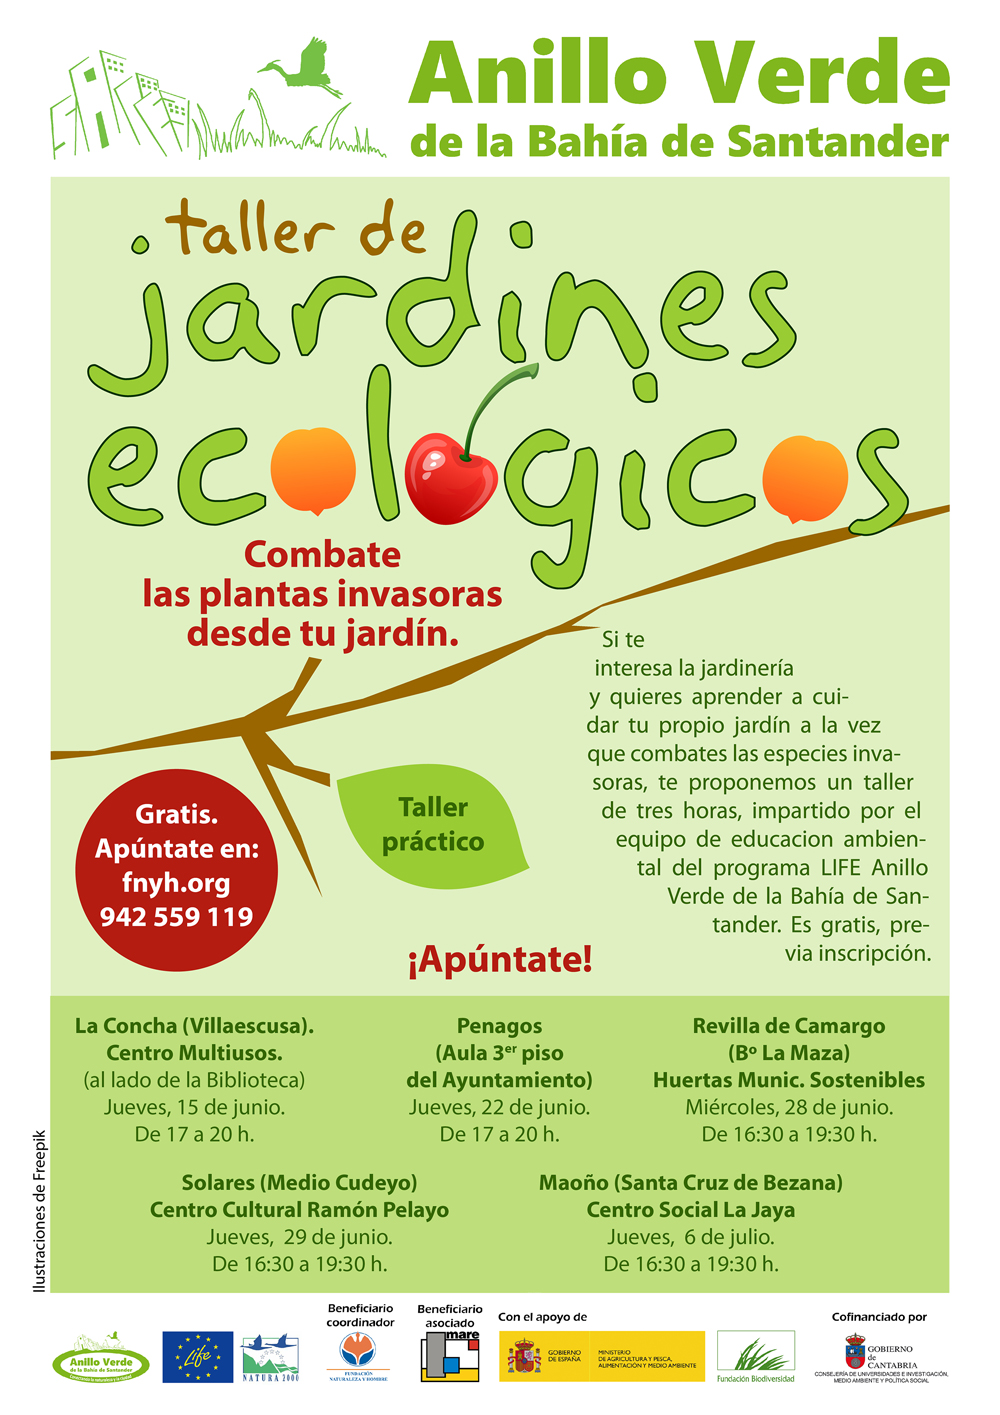 Talleres Jardines Ecológicos del Proyecto LIFE Anillo Verde de la Bahía de Santander